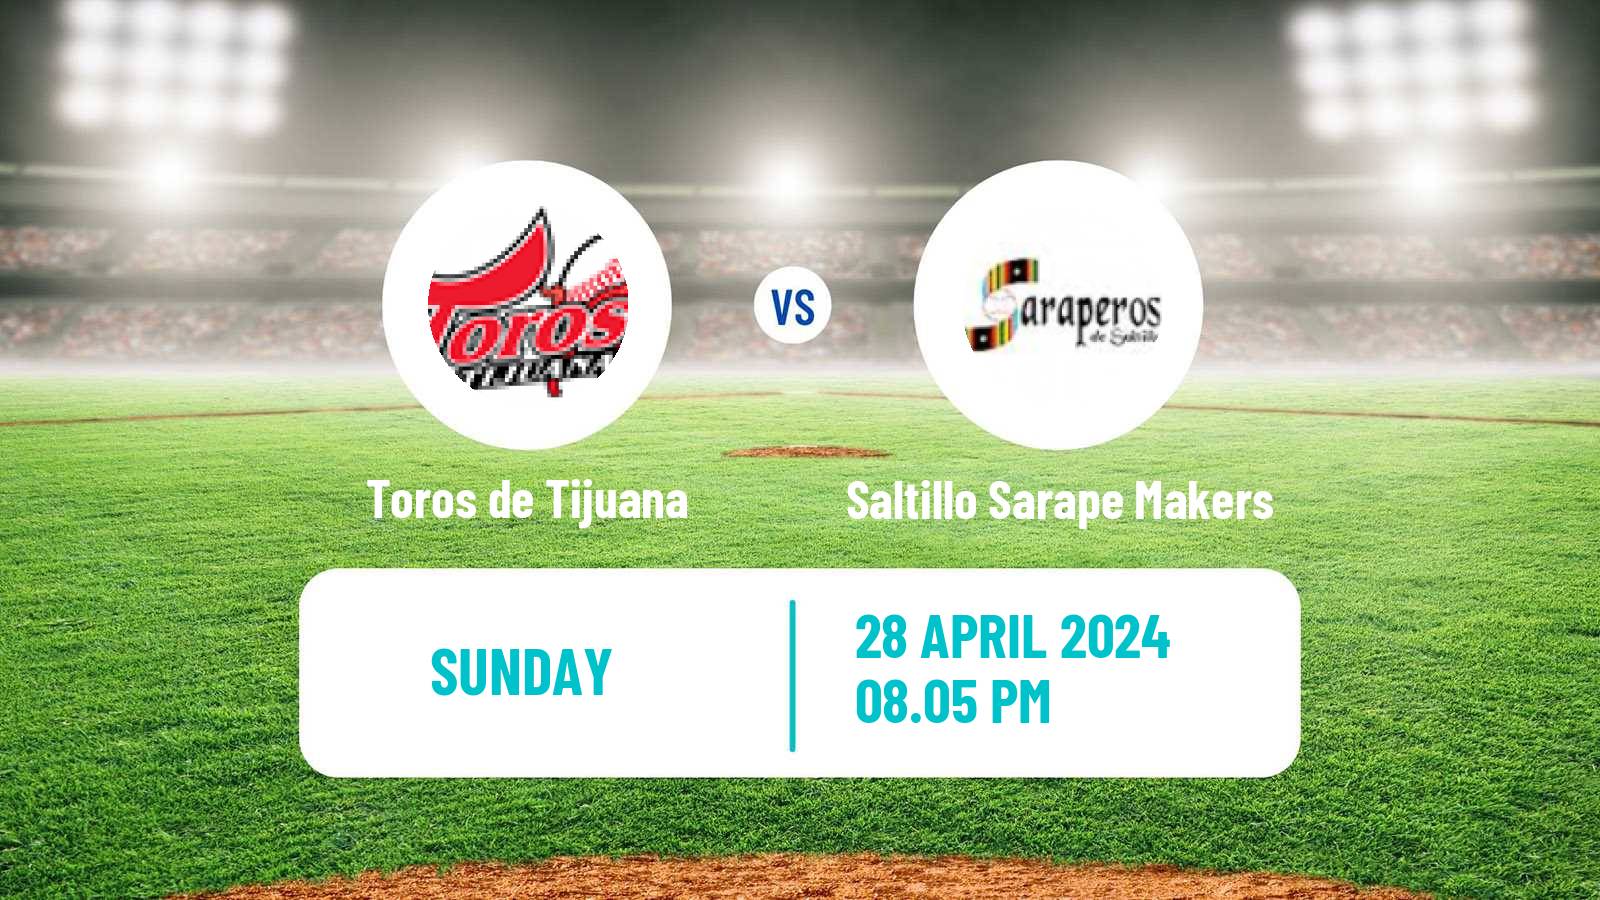 Baseball LMB Toros de Tijuana - Saltillo Sarape Makers